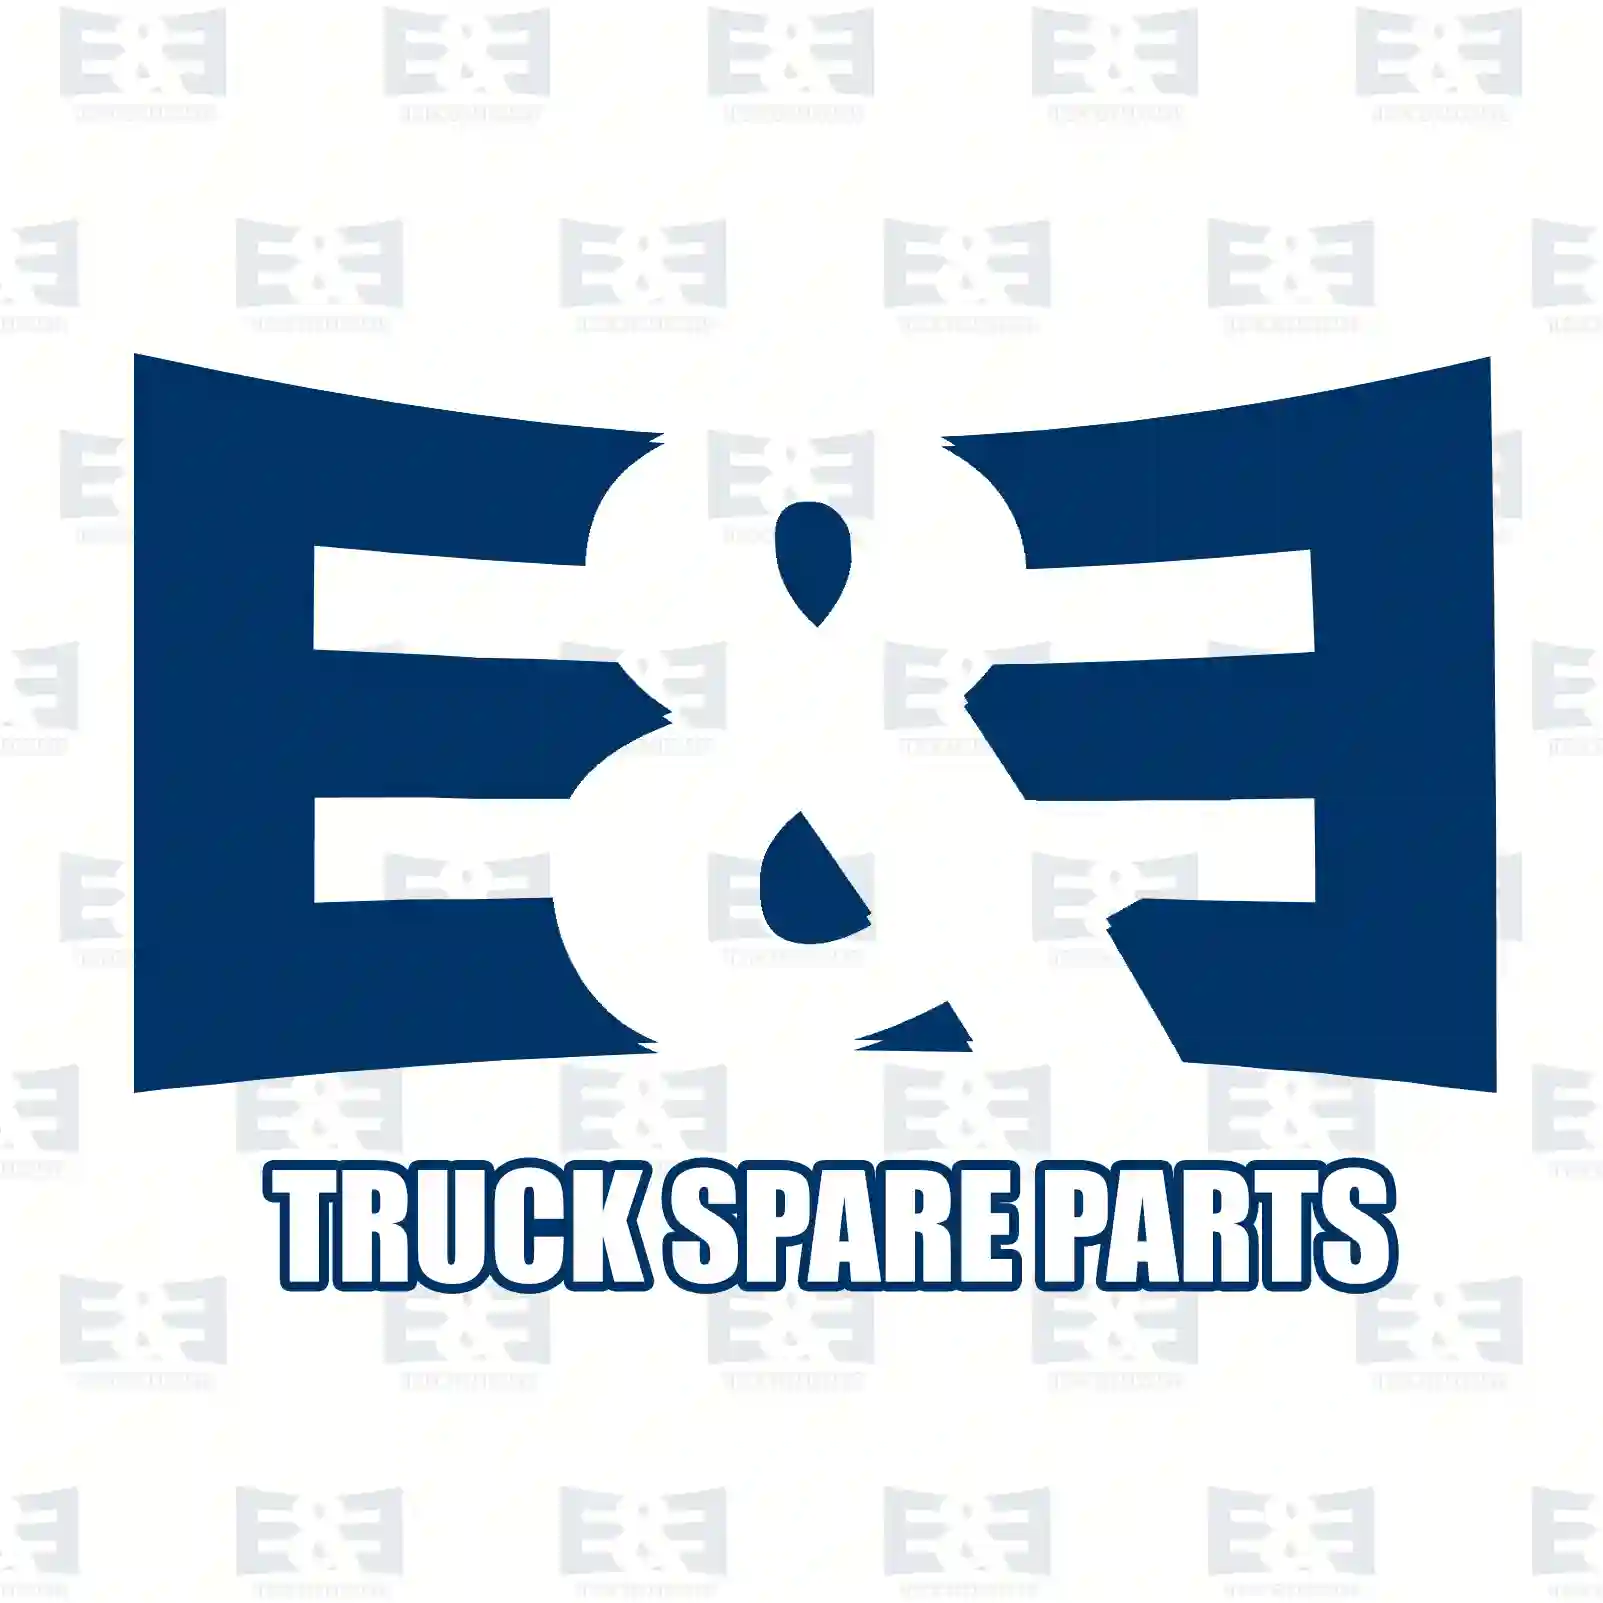 Brake drum, 2E2293331, 157676, , , , , , ||  2E2293331 E&E Truck Spare Parts | Truck Spare Parts, Auotomotive Spare Parts Brake drum, 2E2293331, 157676, , , , , , ||  2E2293331 E&E Truck Spare Parts | Truck Spare Parts, Auotomotive Spare Parts